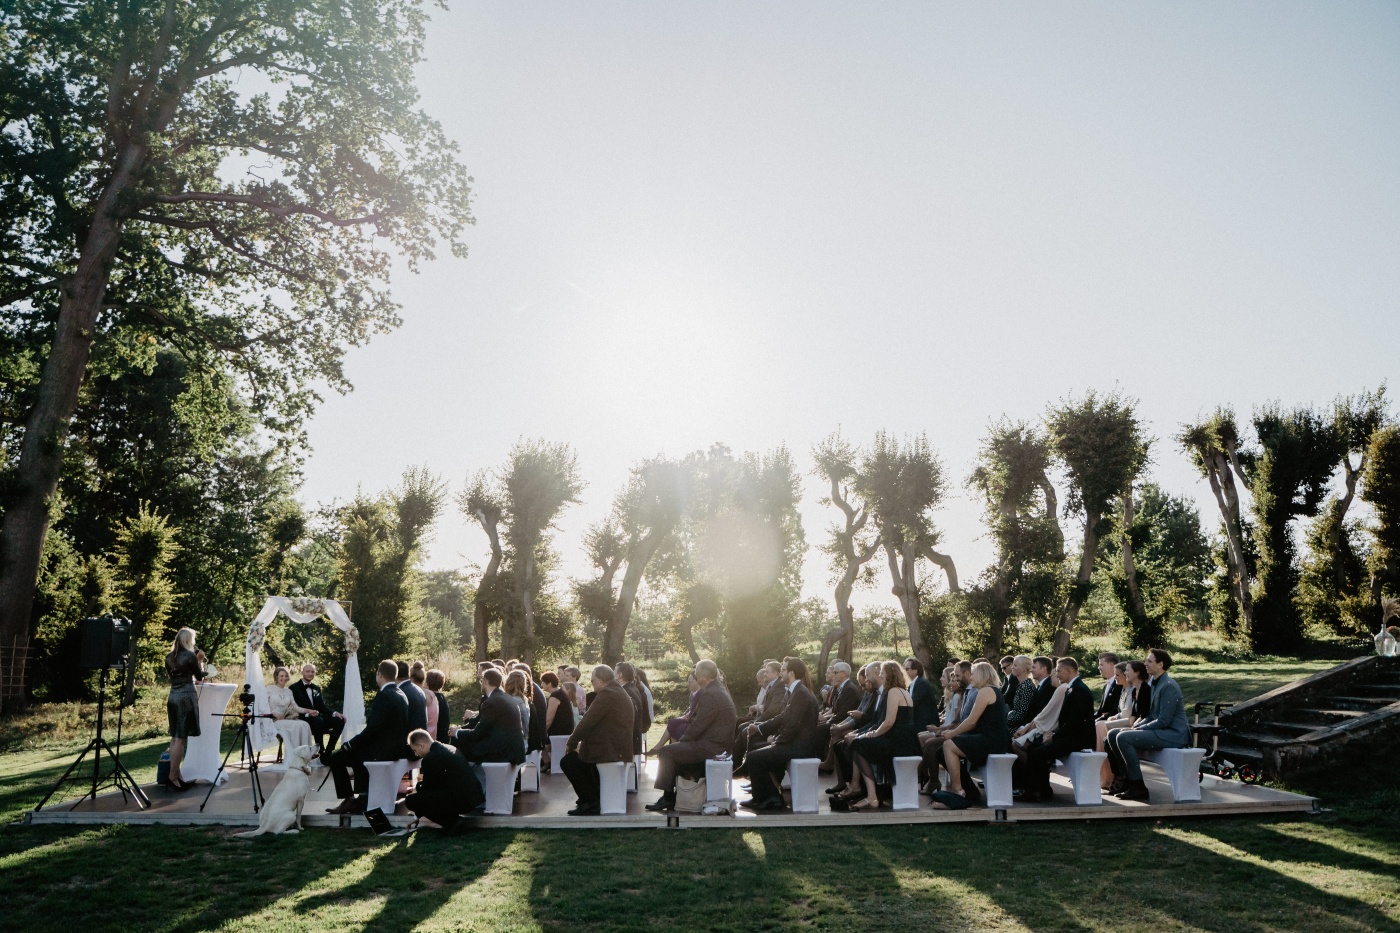 Gäste sitzen unter Bäumen auf Stühlen und warten auf die Trauung vor einem geschmückten Hochzeitsbogen.